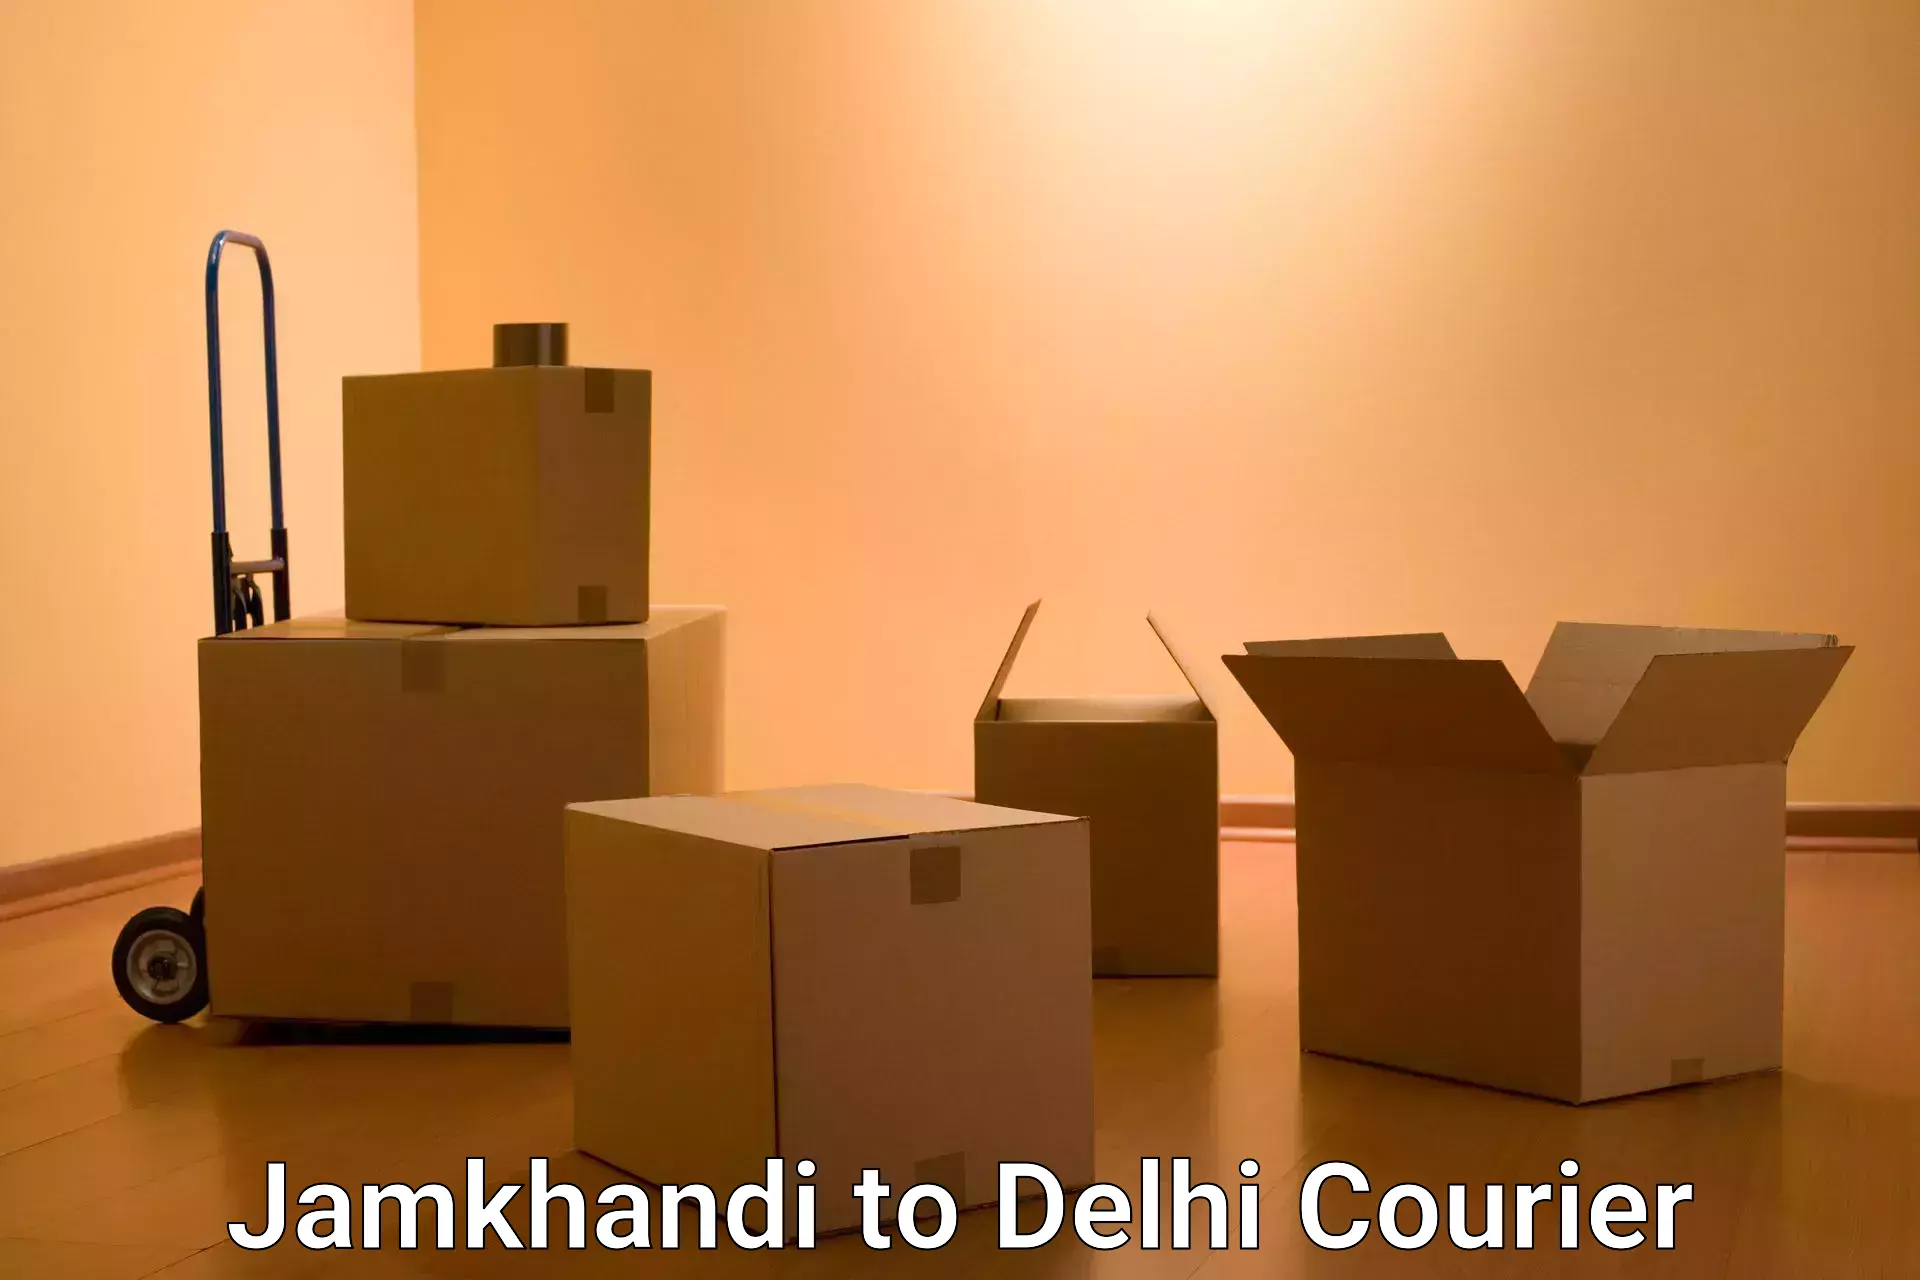 Express delivery capabilities Jamkhandi to IIT Delhi